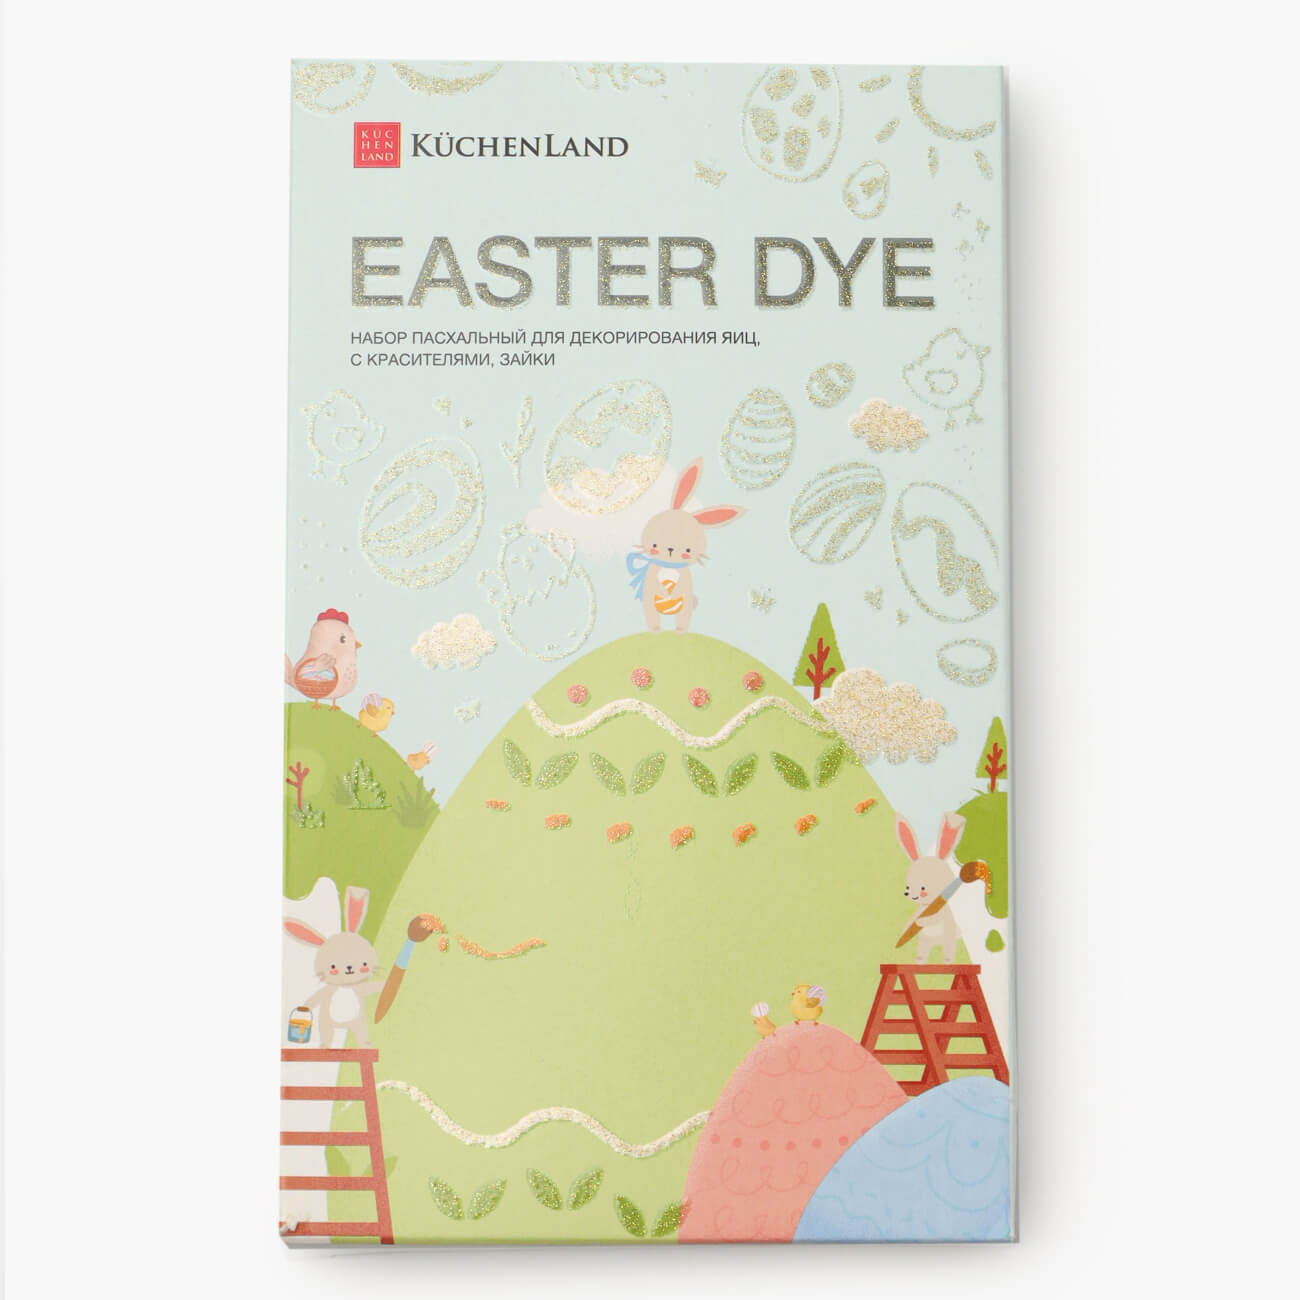 Набор пасхальный для декорирования яиц, 4 цвета/17 пр, Зайки, Easter dye изображение № 1